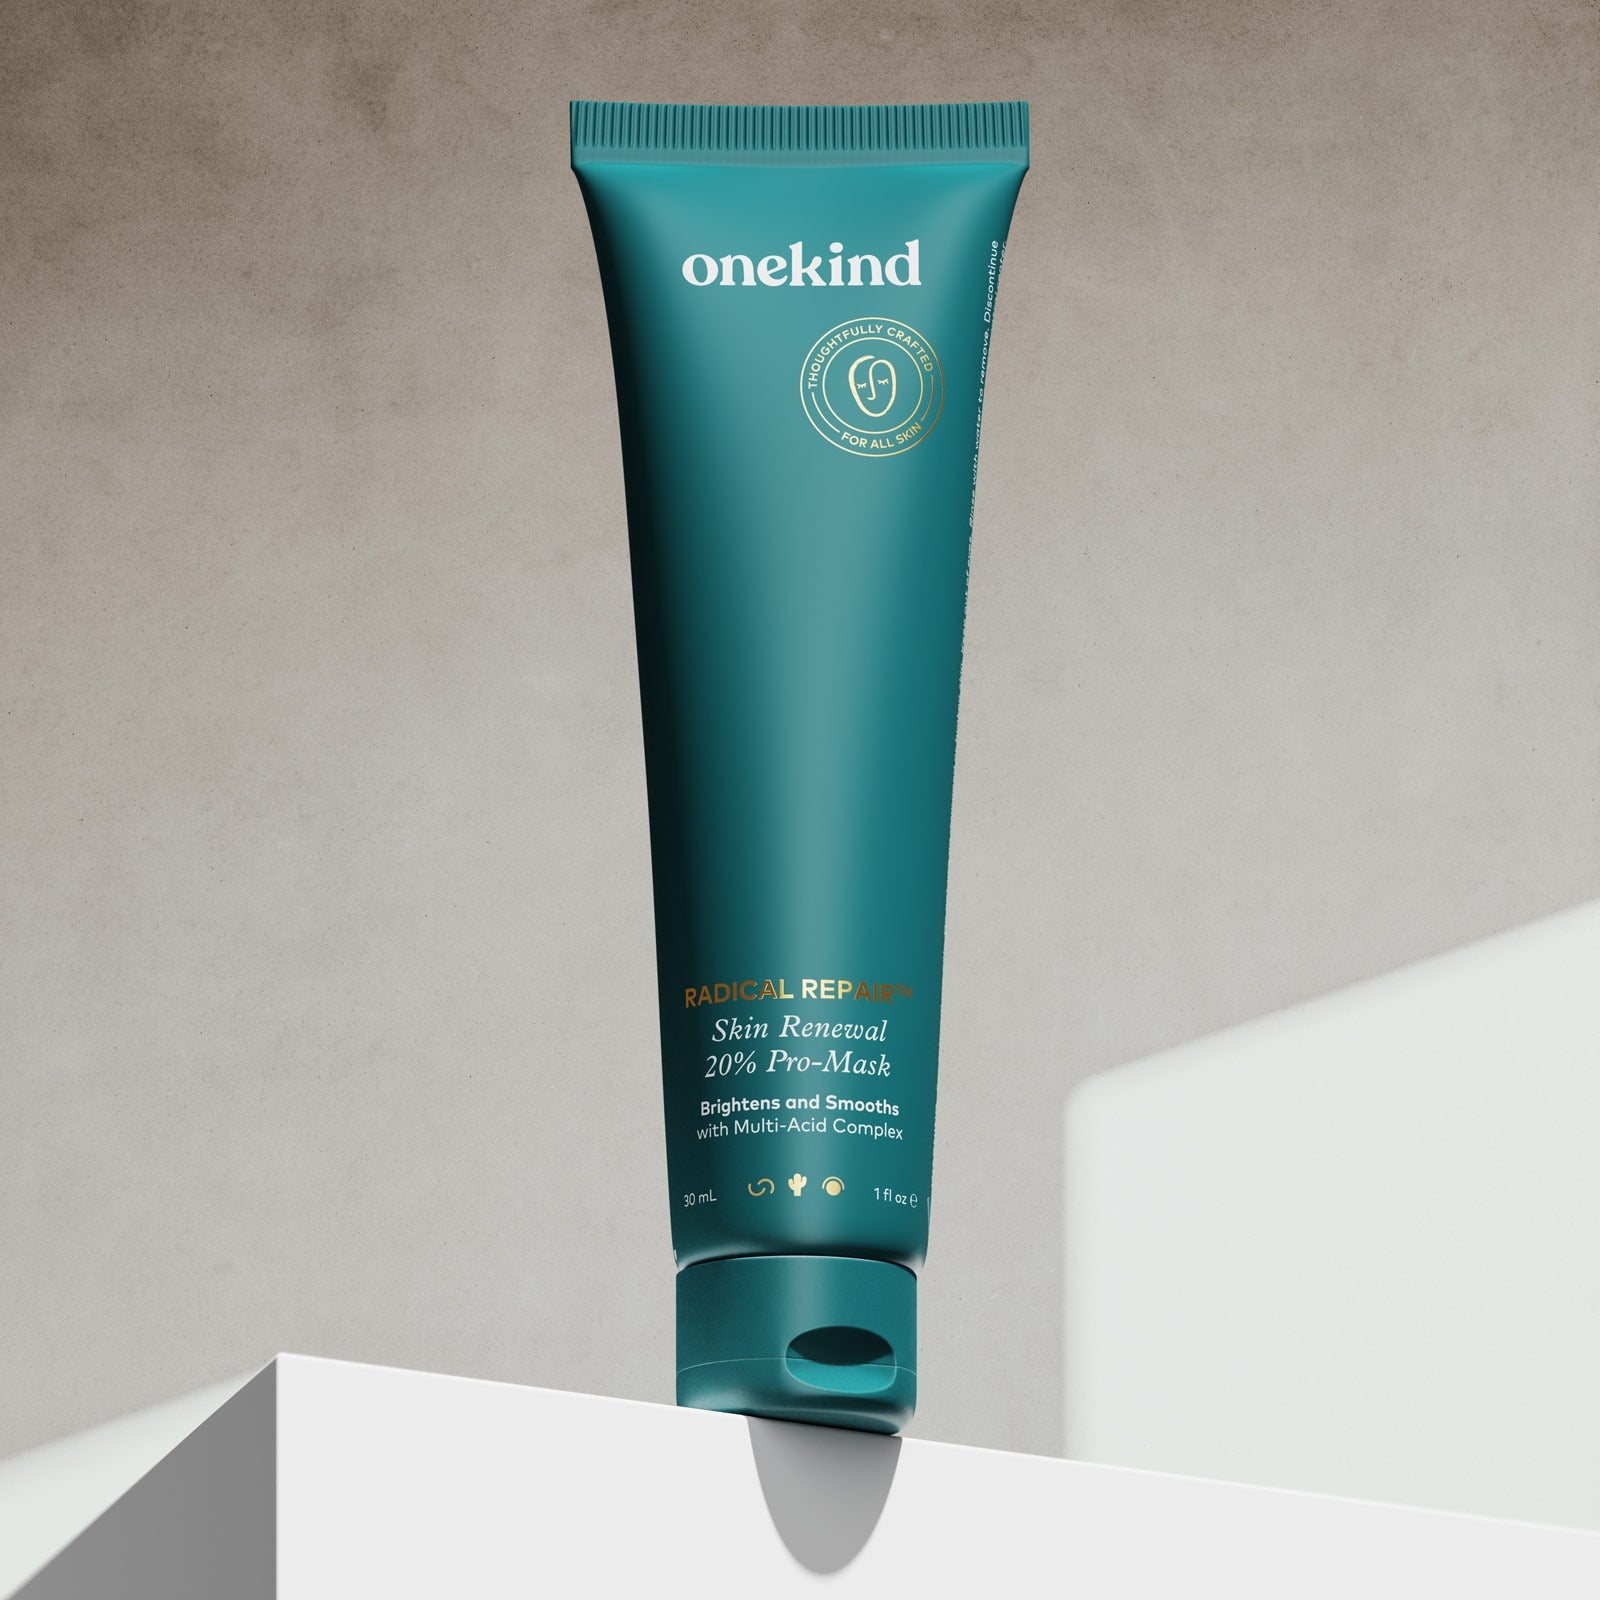 Radical Repair™ Skin Renewal 20% Pro-Mask - Onekind